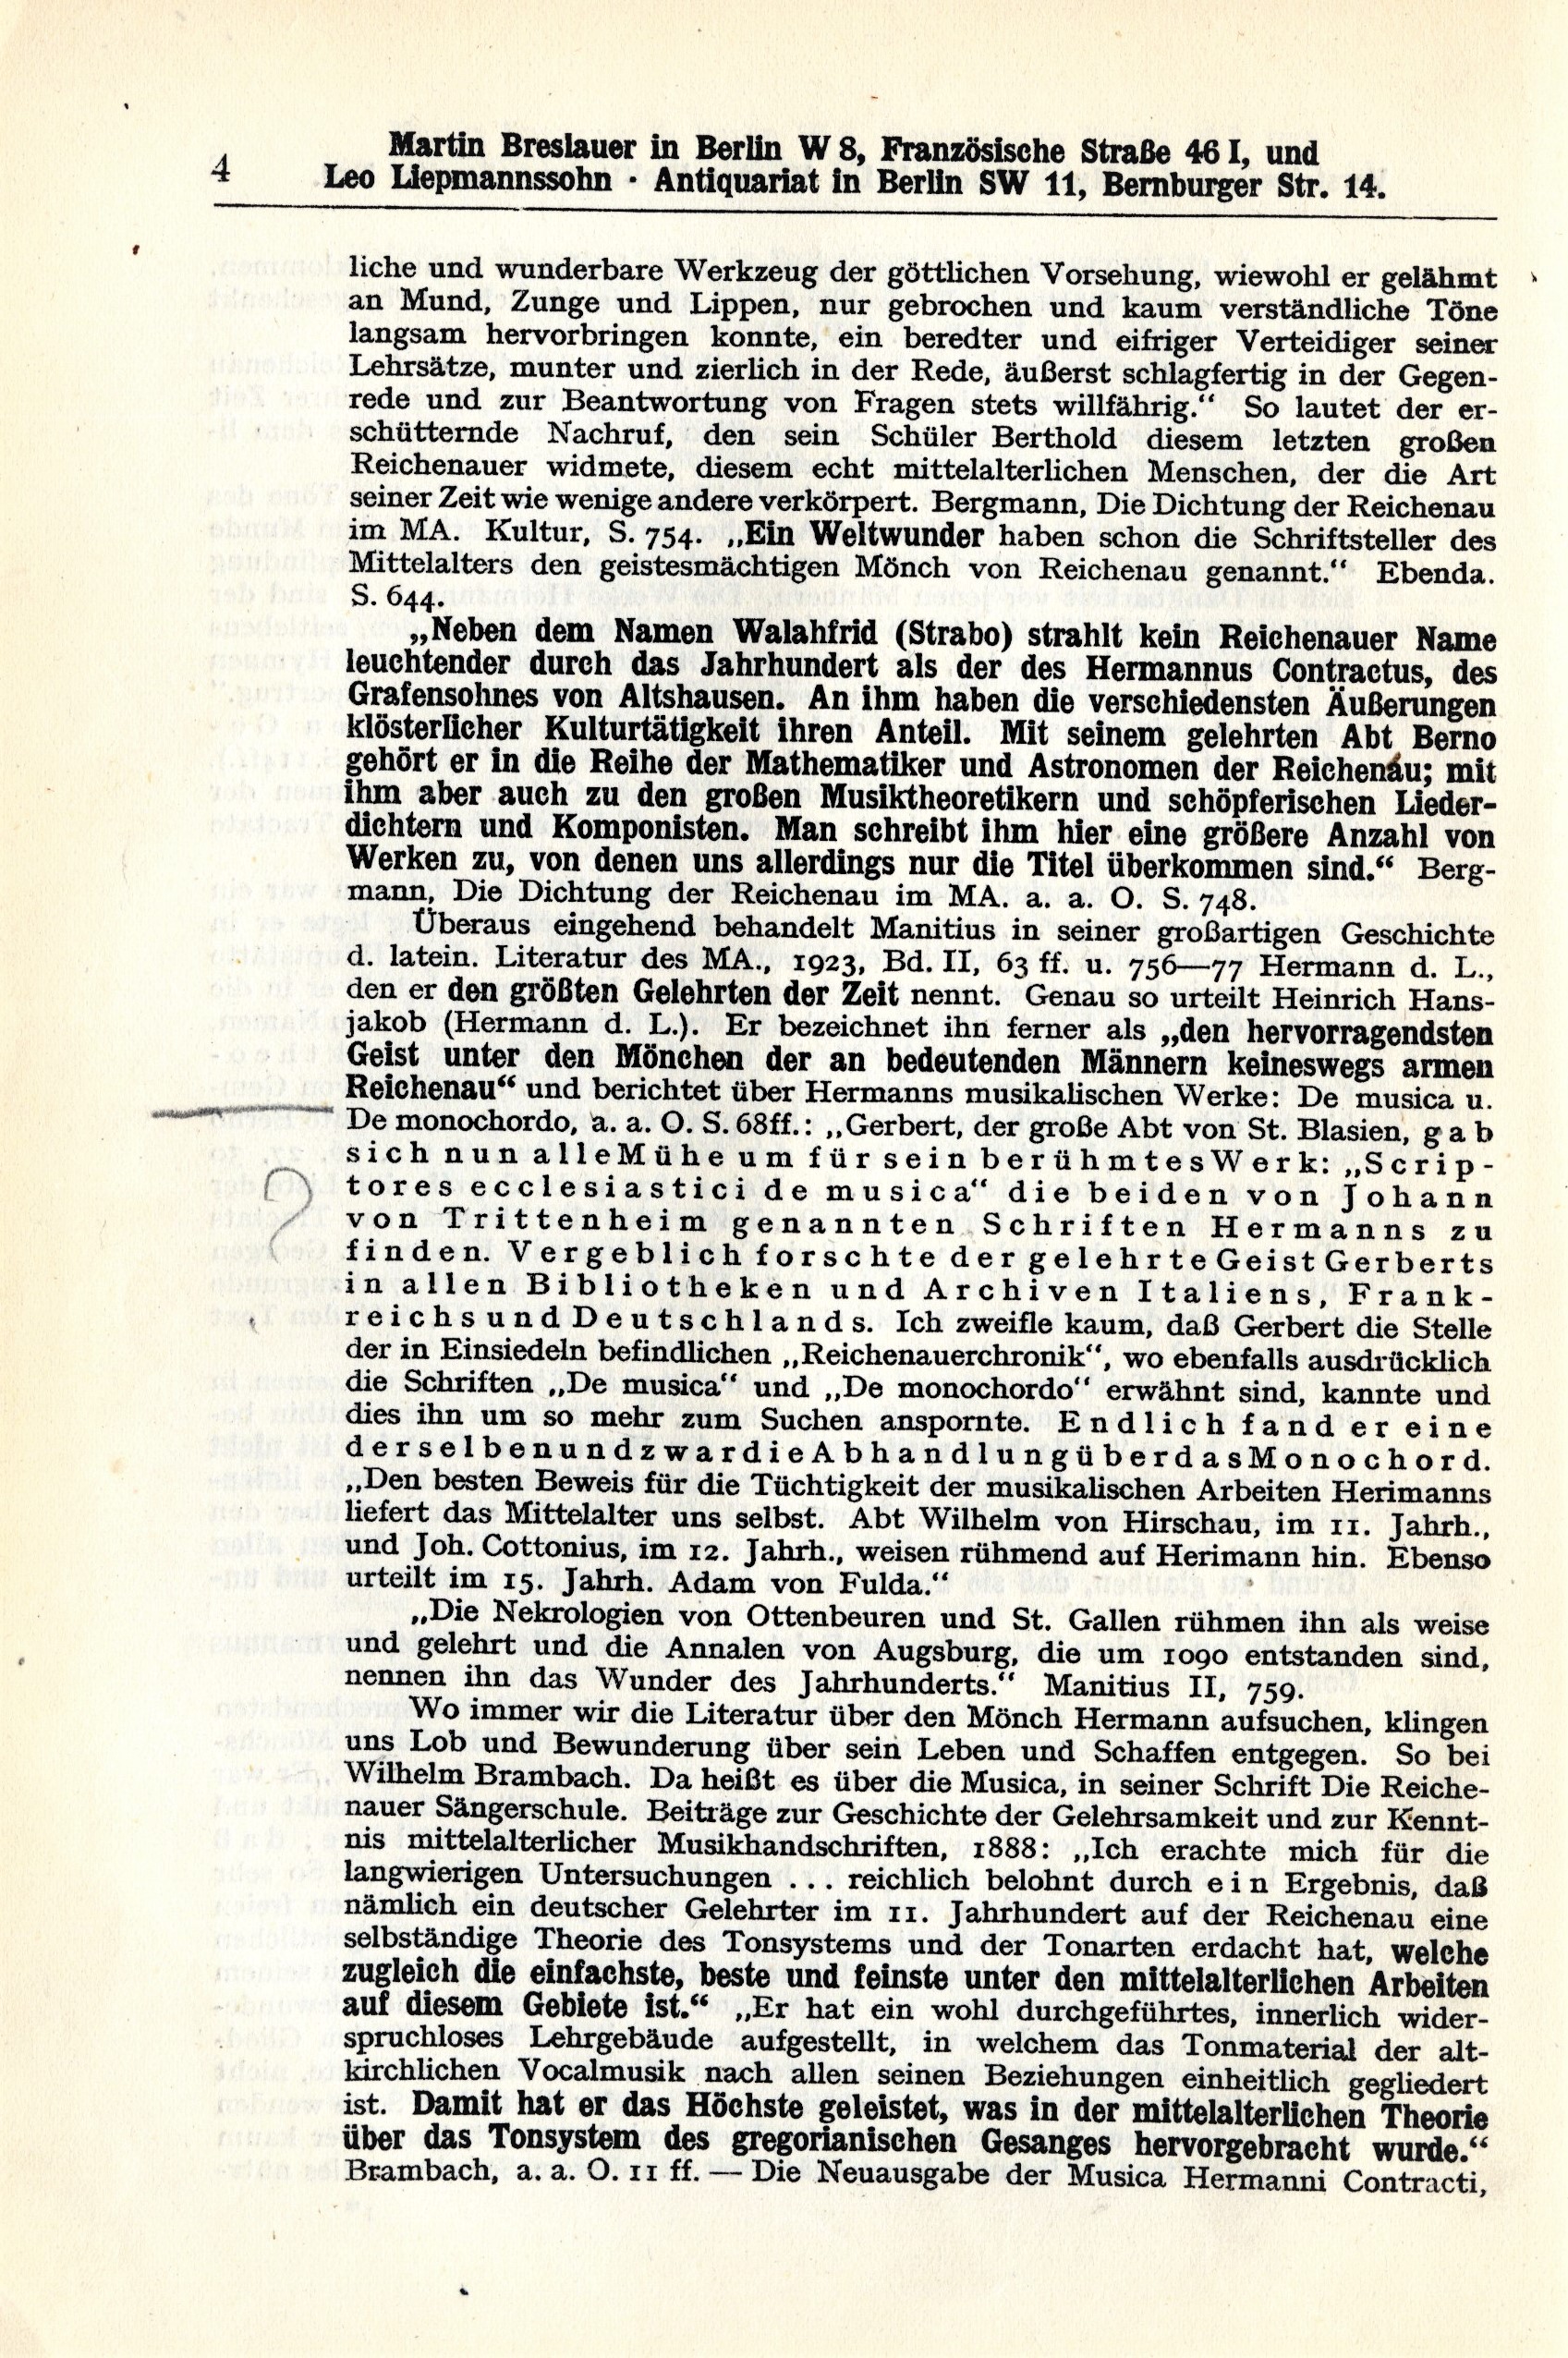 Wolffheim auction catalog vol 2, page 4